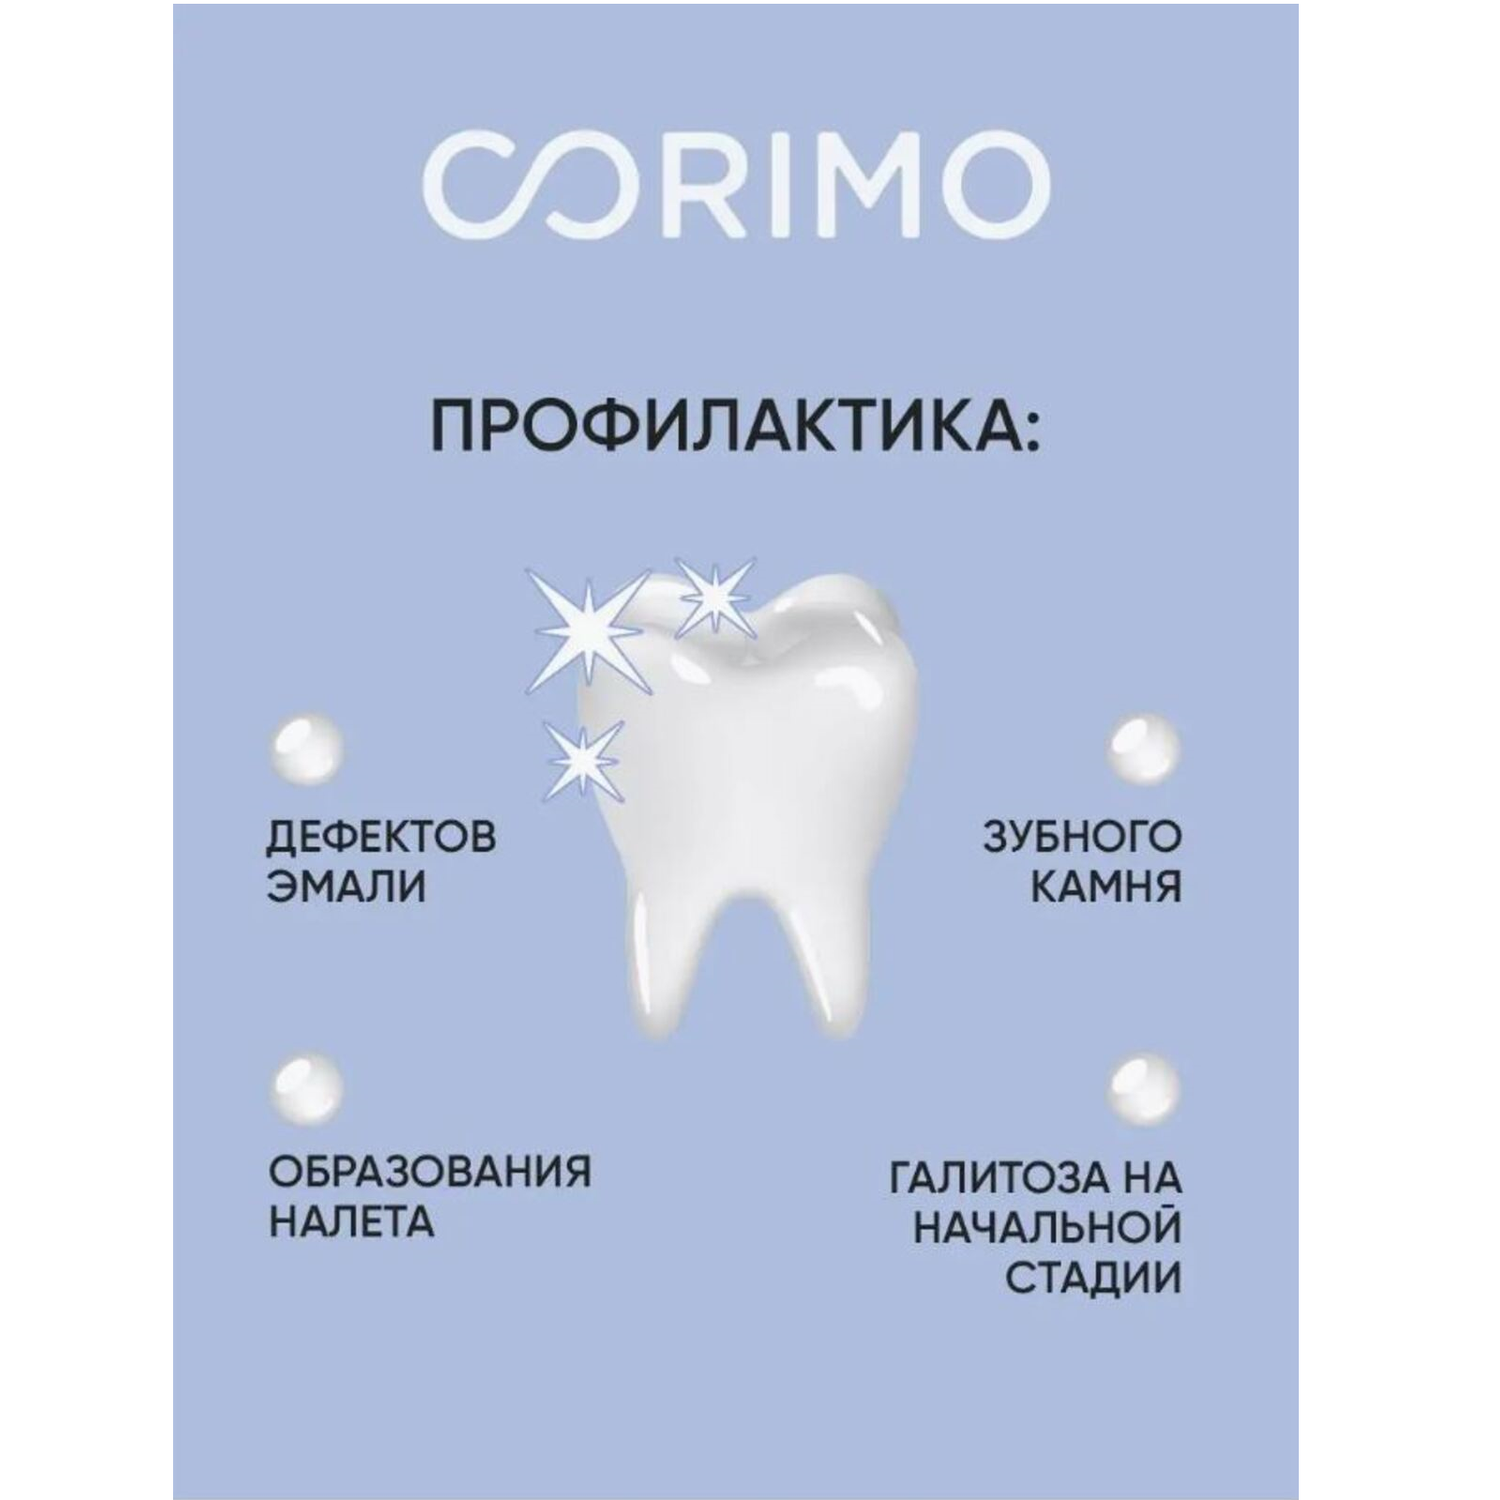 Зубная паста CORIMO профилактическая Отбеливание и ультрасвежесть 75 г - фото 5